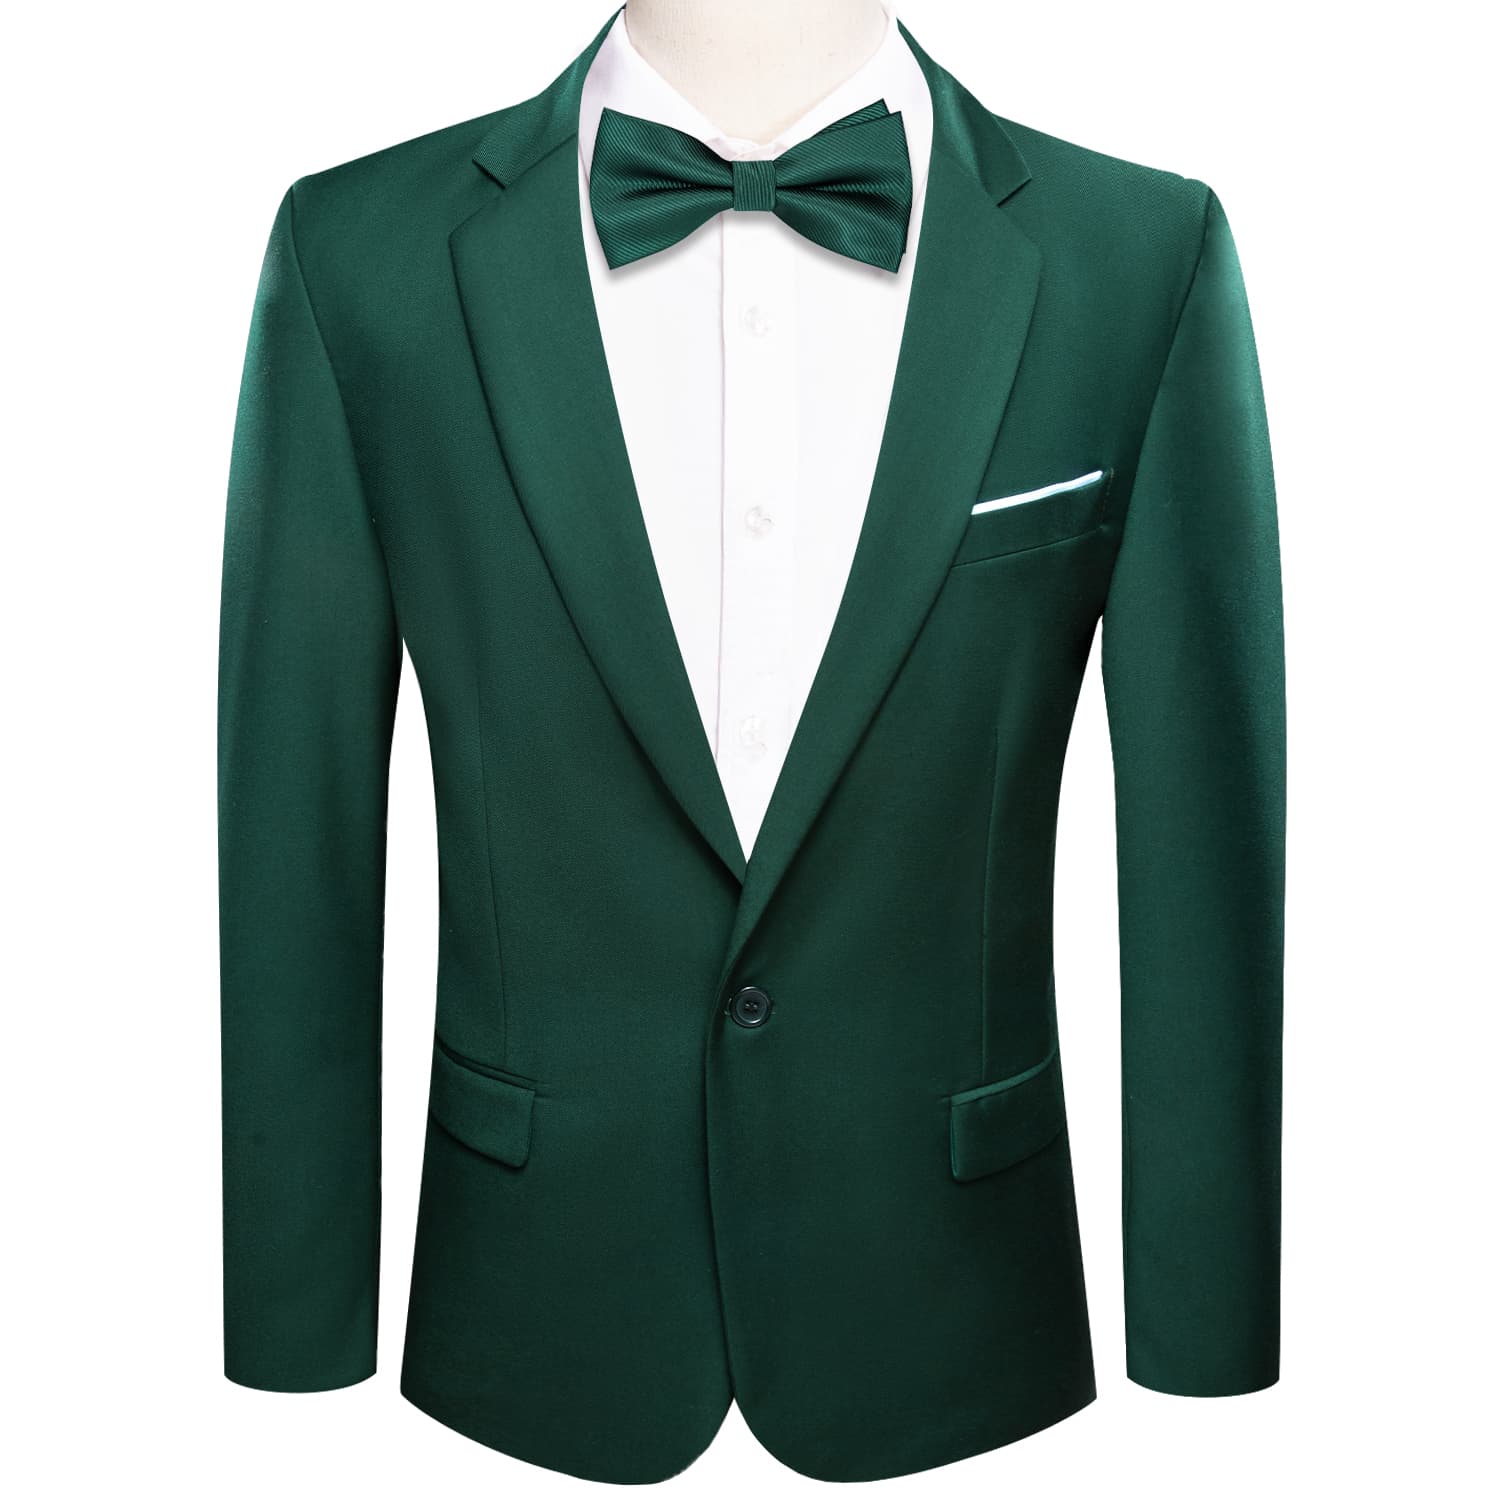 Blazer Dark Green Men's Wedding Business Solid Top Men Suit